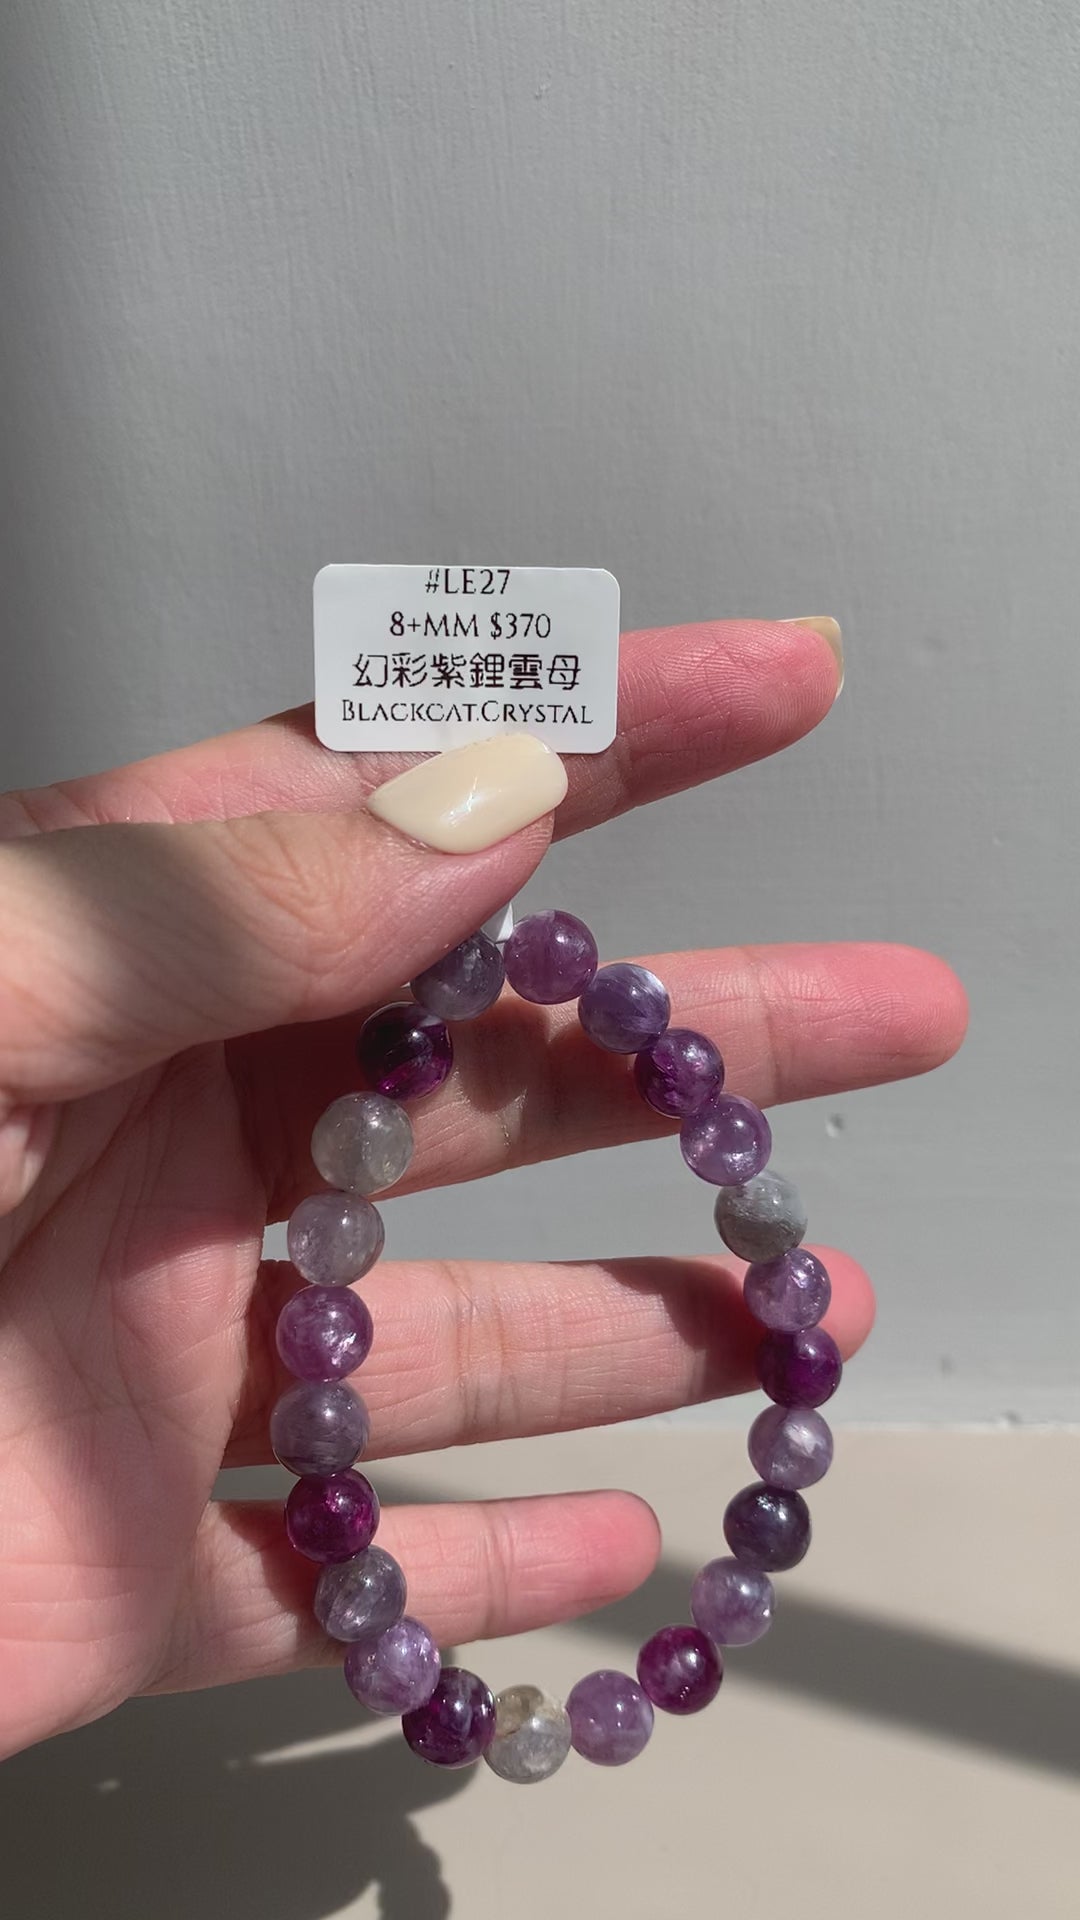 幻彩紫鋰雲母(LE27) 8+mm